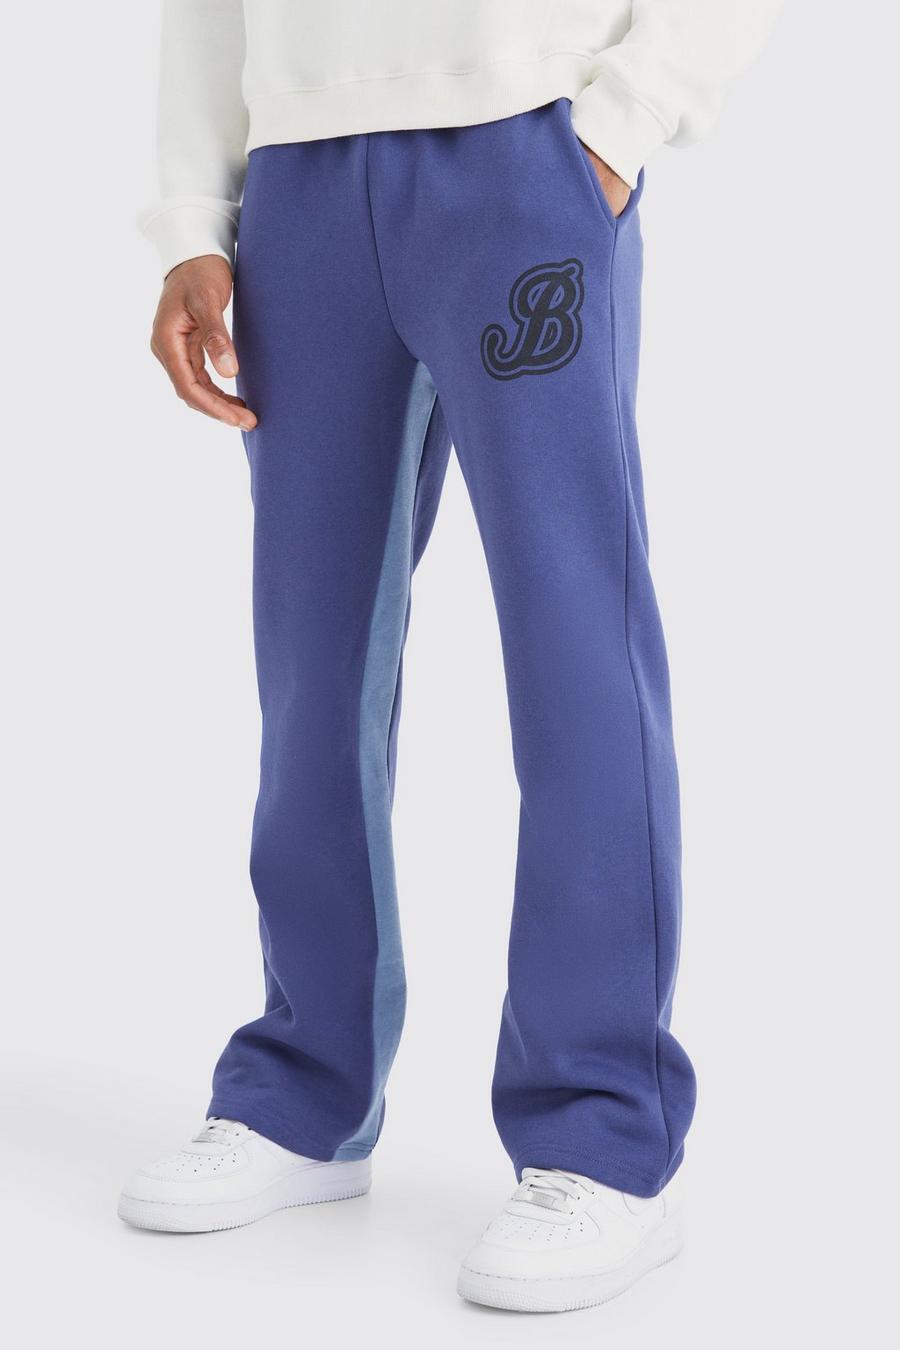 Pantalón deportivo con refuerzos y letra B universitaria, Slate blue